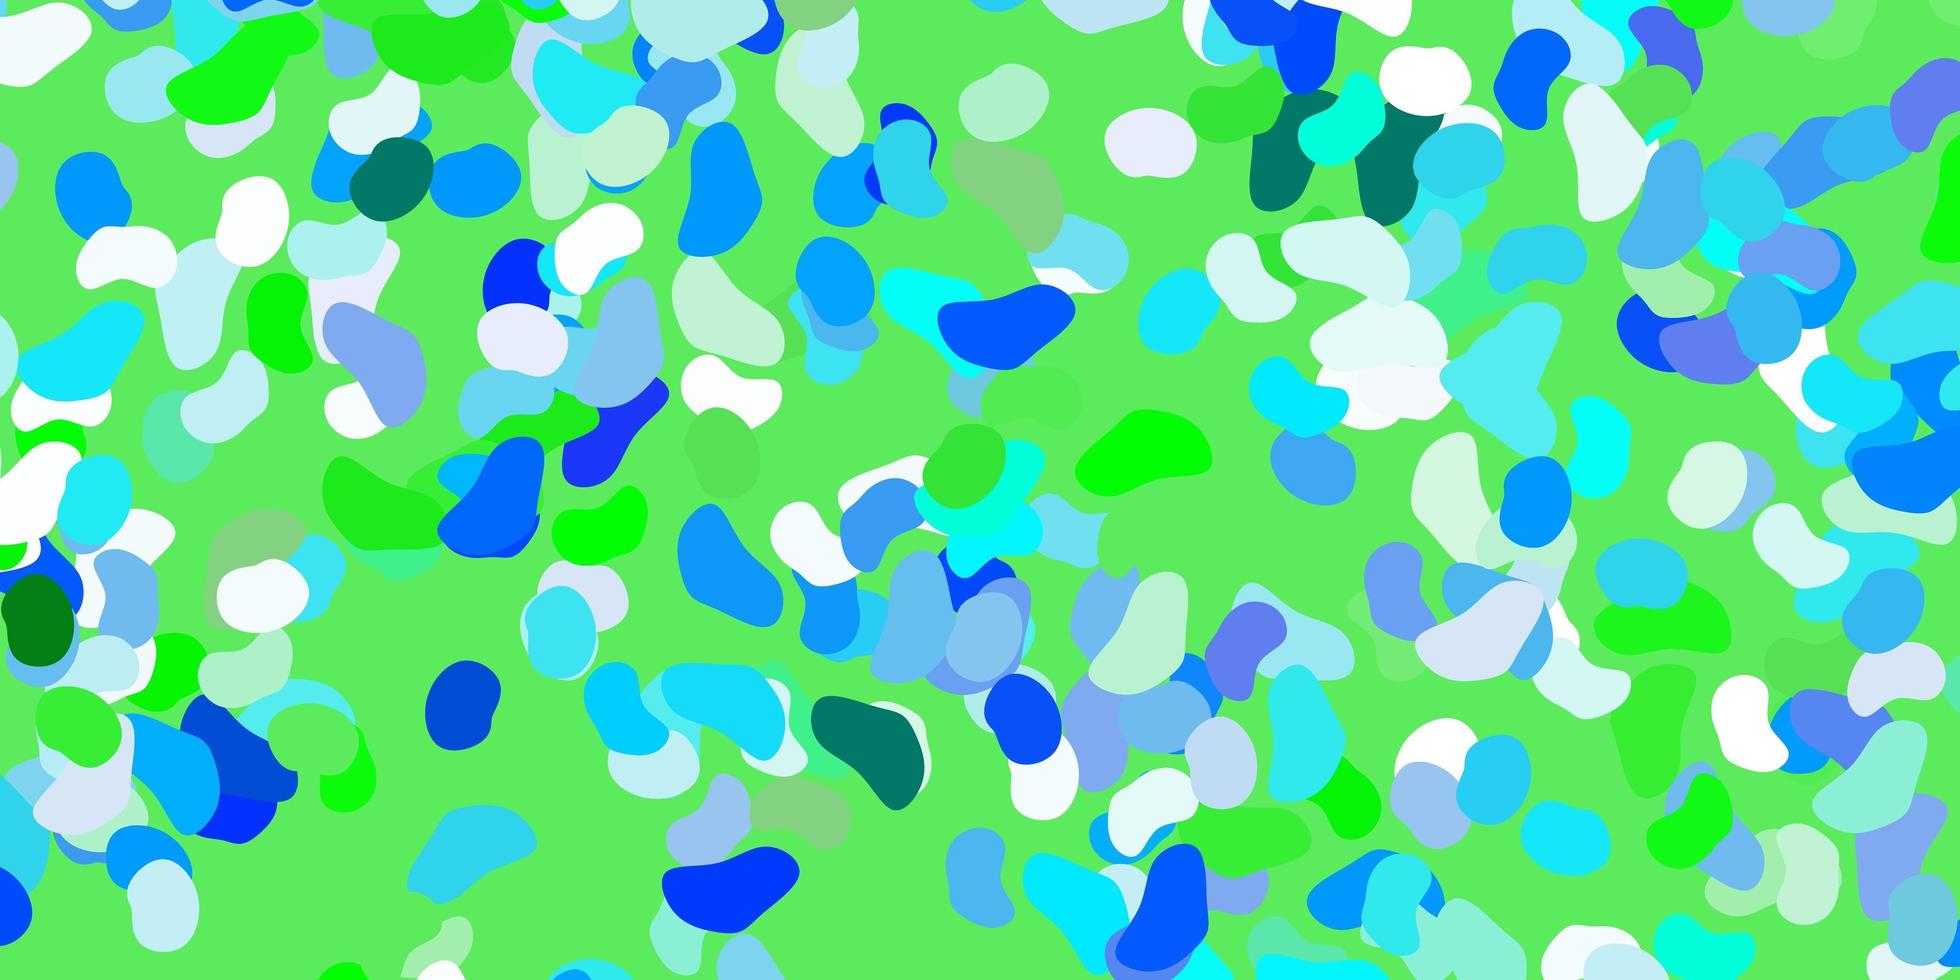 ljusblå, grön vektorstruktur med memphis-former. vektor